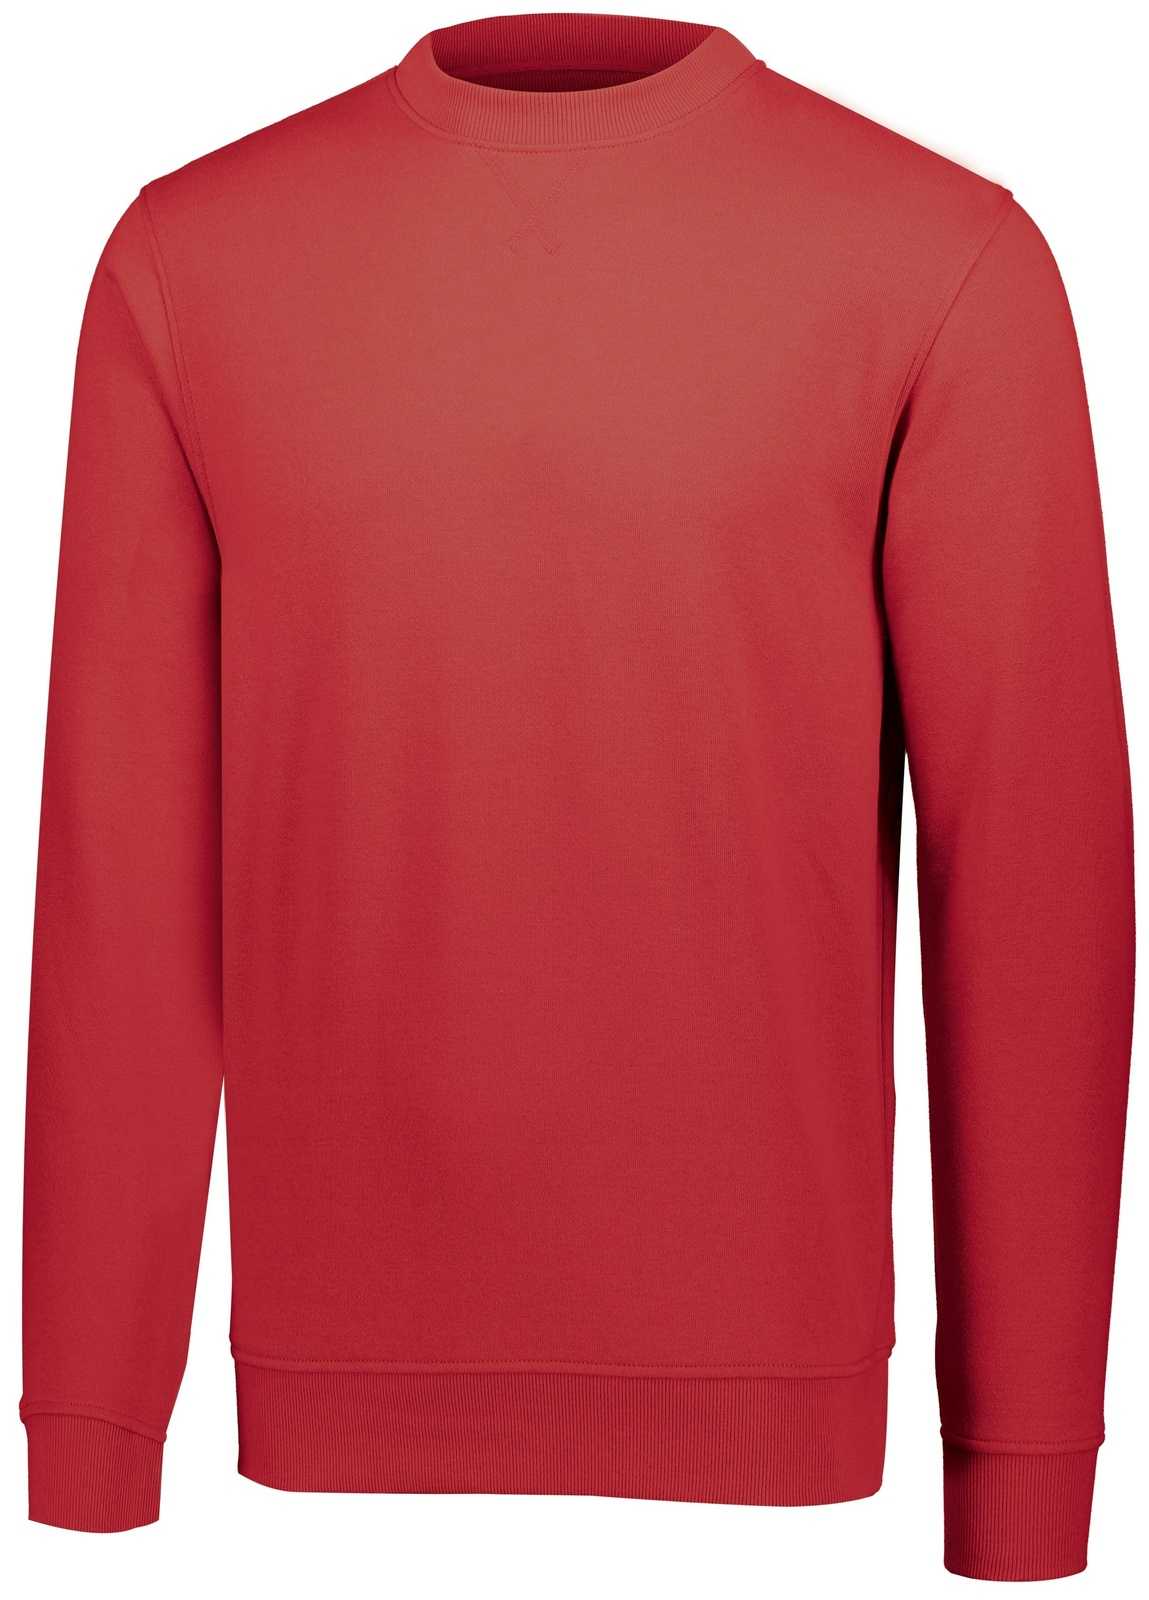 Augusta 5416 60/40 Fleece Crewneck Sweatshirt - Red - HIT a Double